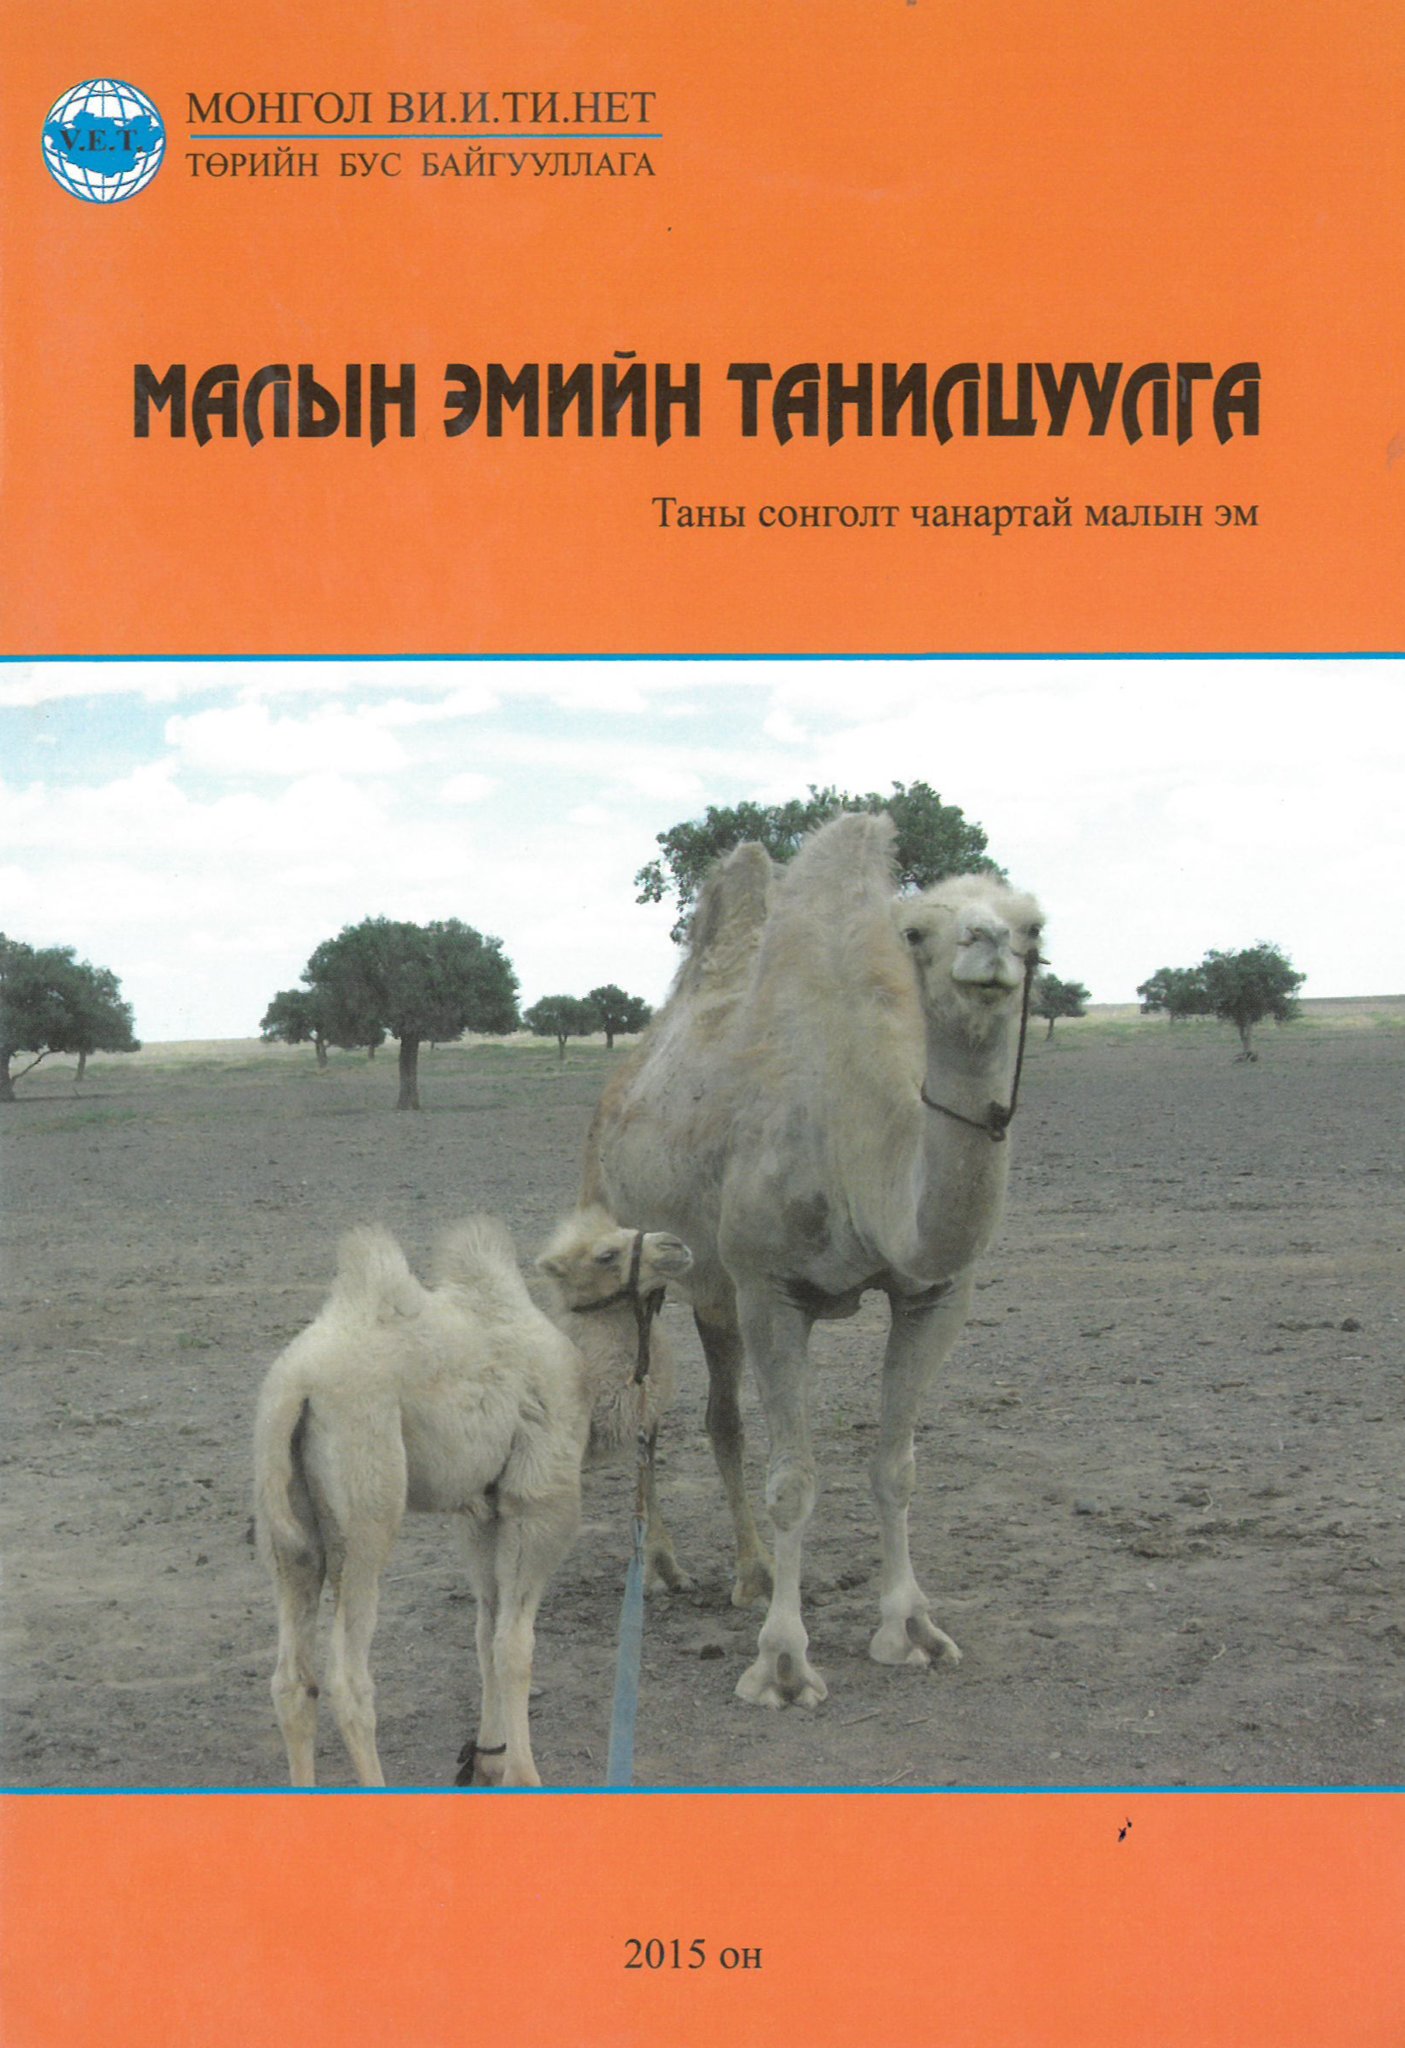 Herders manual